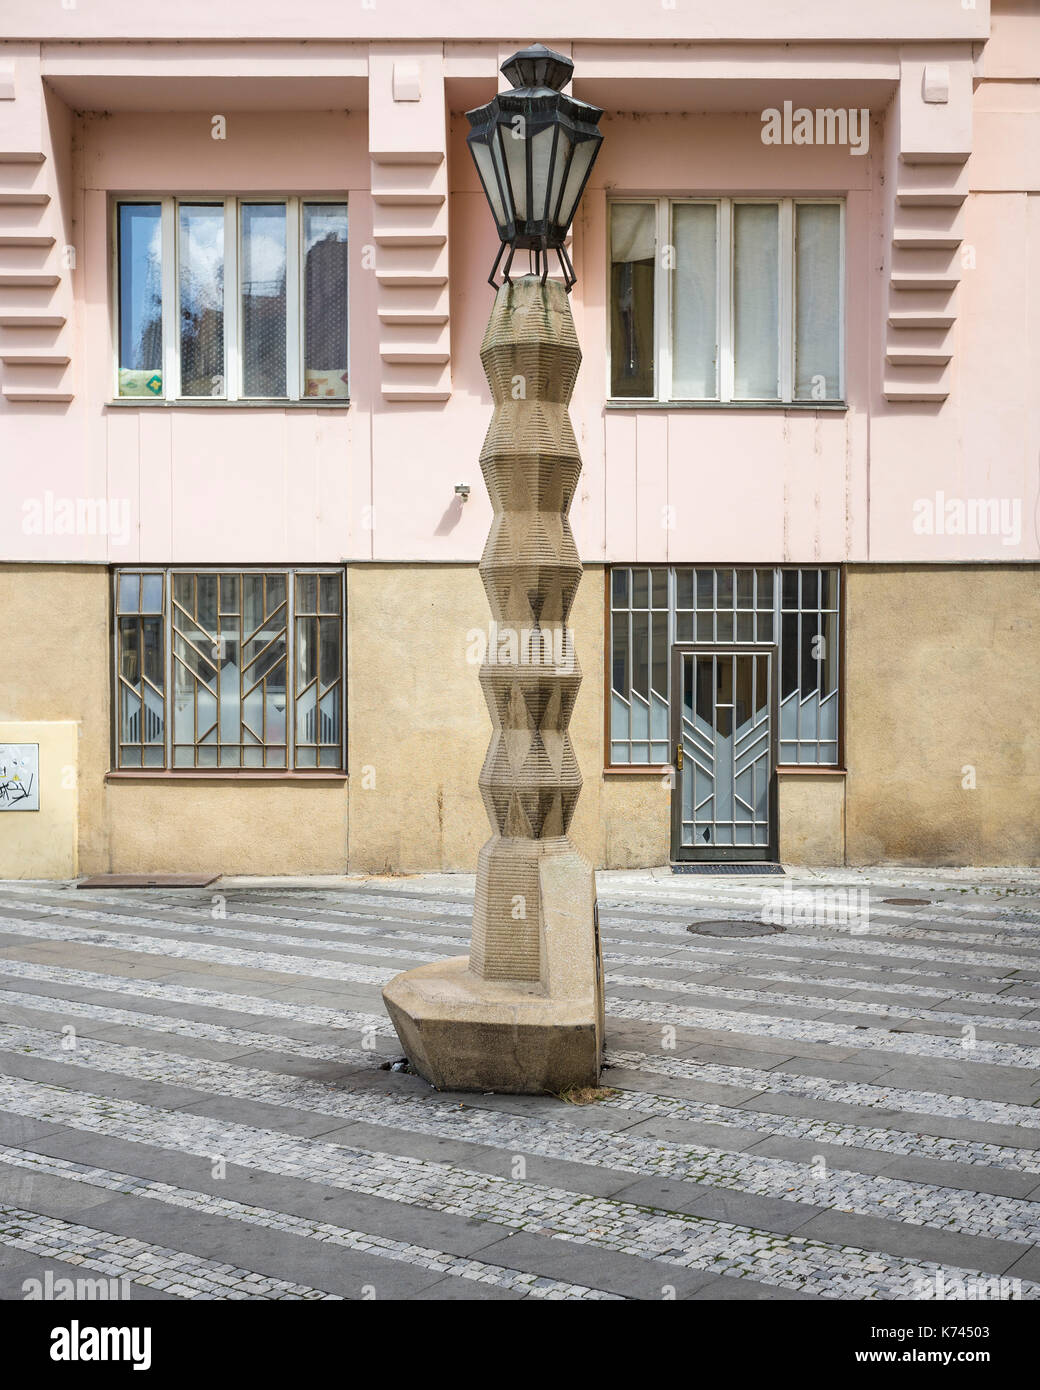 Prague. Czech Republic. Cubist lamp post, on Jungmannovo náměstí, designed by Czech architect Emil Králíček (1877-1930), 1912-1913. Stock Photo